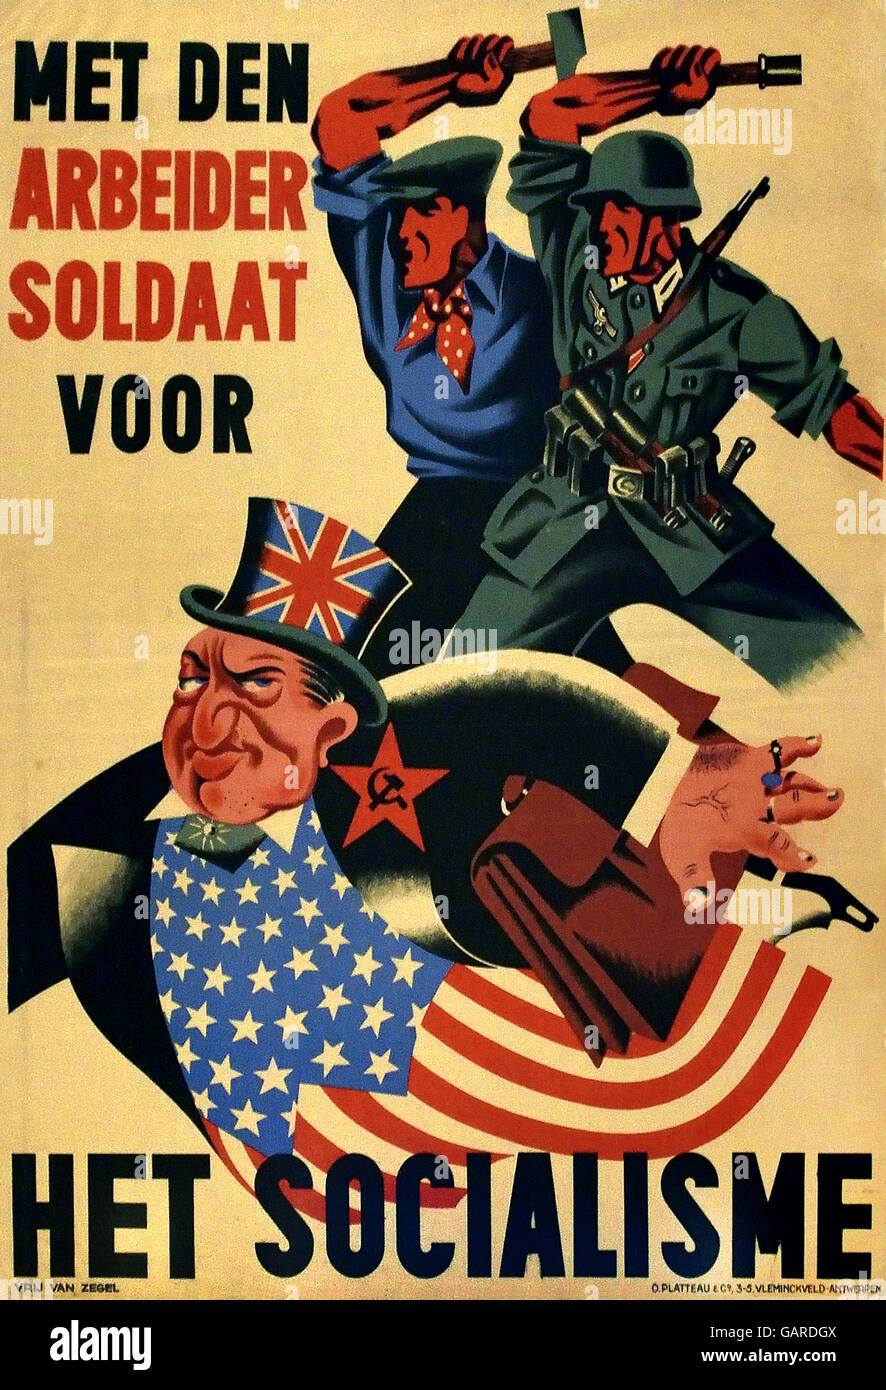 Incontrato den Arbeider soldaat voor het Socialisme - il soldato del lavoratore per il socialismo nazionale di propaganda socialista poster in Belgio 1943 / 44 belga nazista Foto Stock